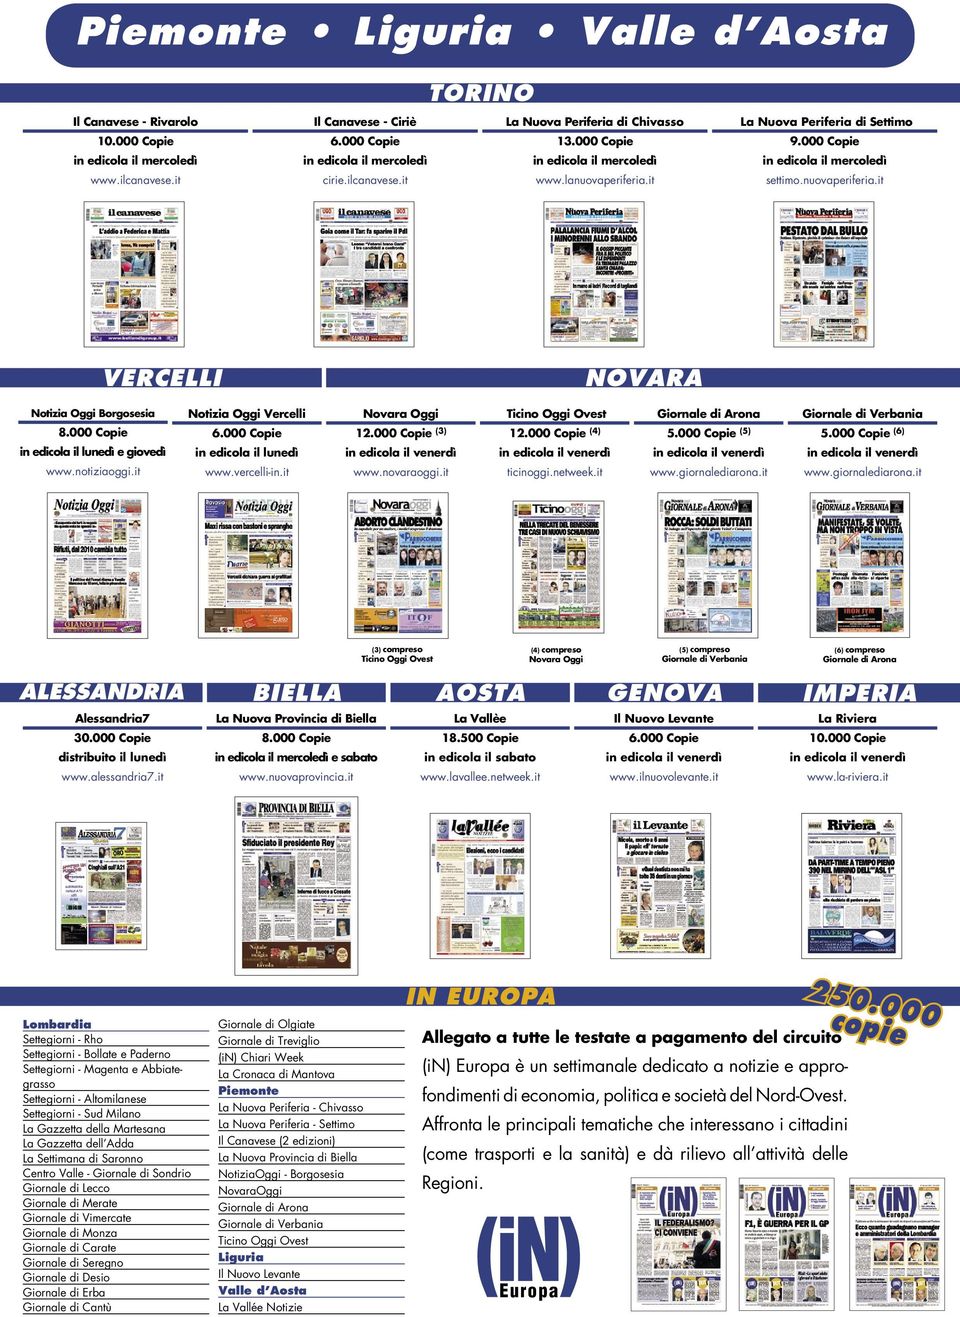 000 Copie in edicola il lunedì e giovedì www.notiziaoggi.it Notizia Oggi Vercelli in edicola il lunedì www.vercelli-in.it Novara Oggi 12.000 Copie (3) www.novaraoggi.it Ticino Oggi Ovest 12.